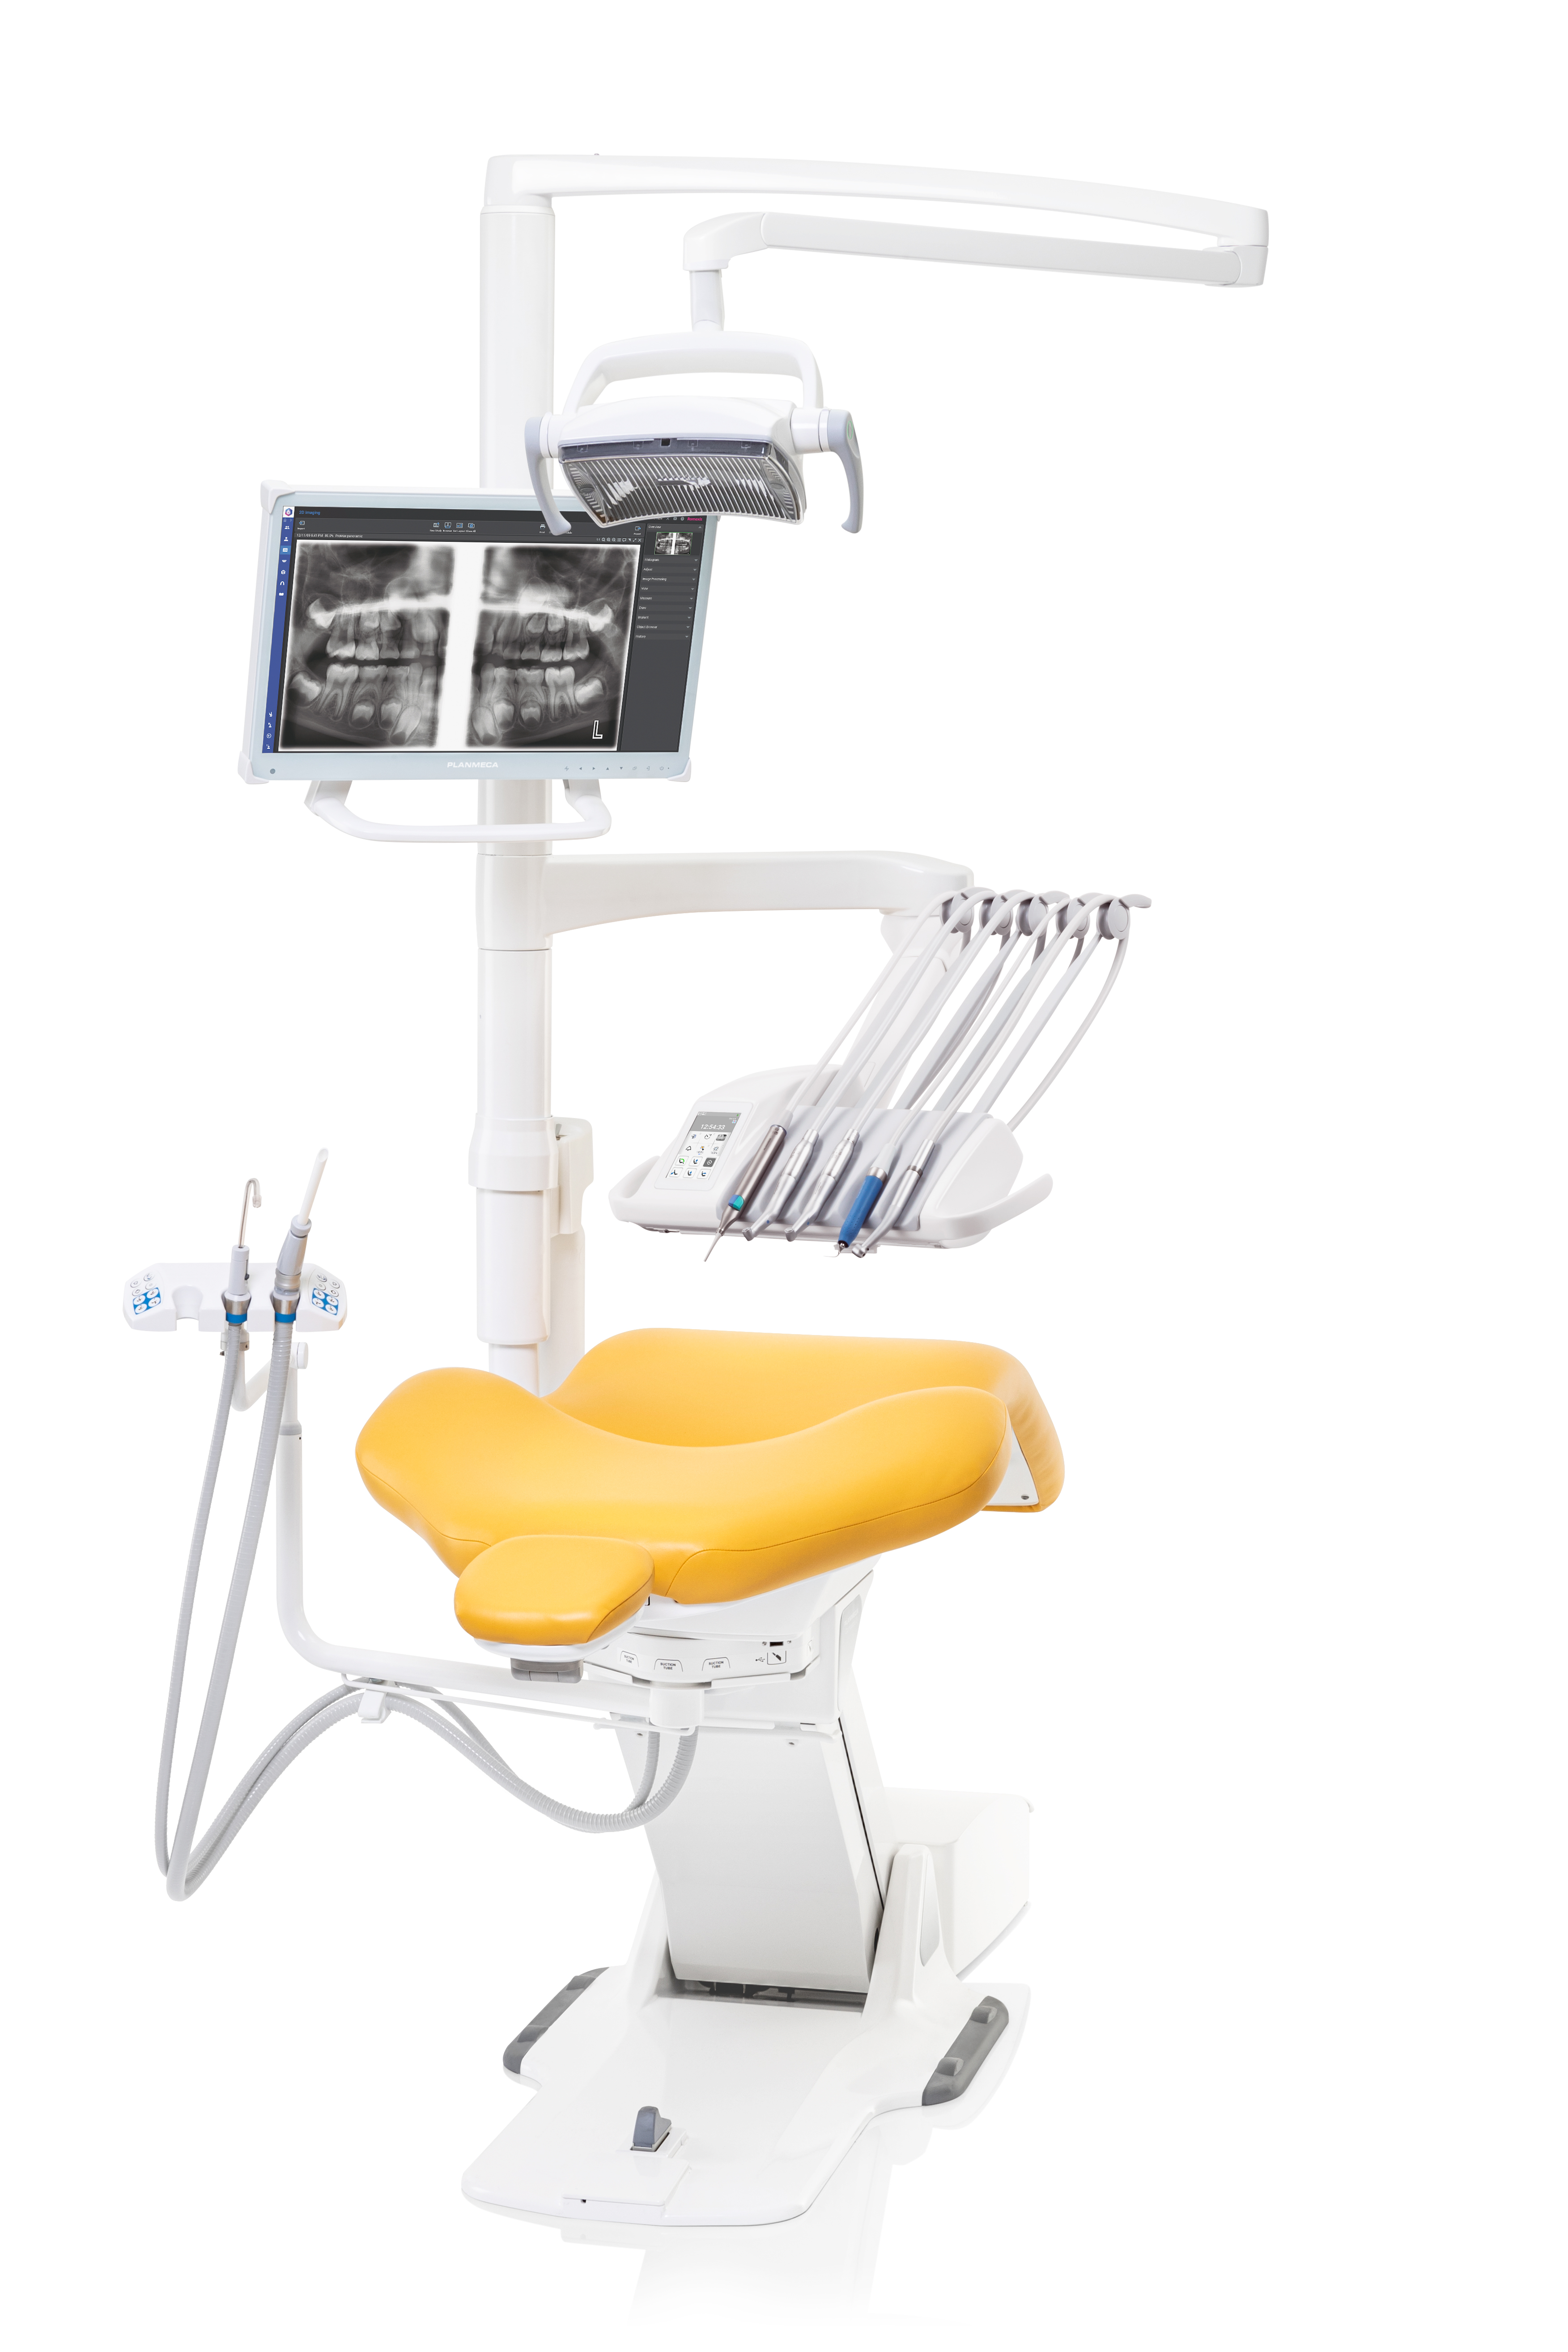 Funktionalität und Flexibilität für jeden Zahnarzt mit Planmecas neuer Behandlungseinheit